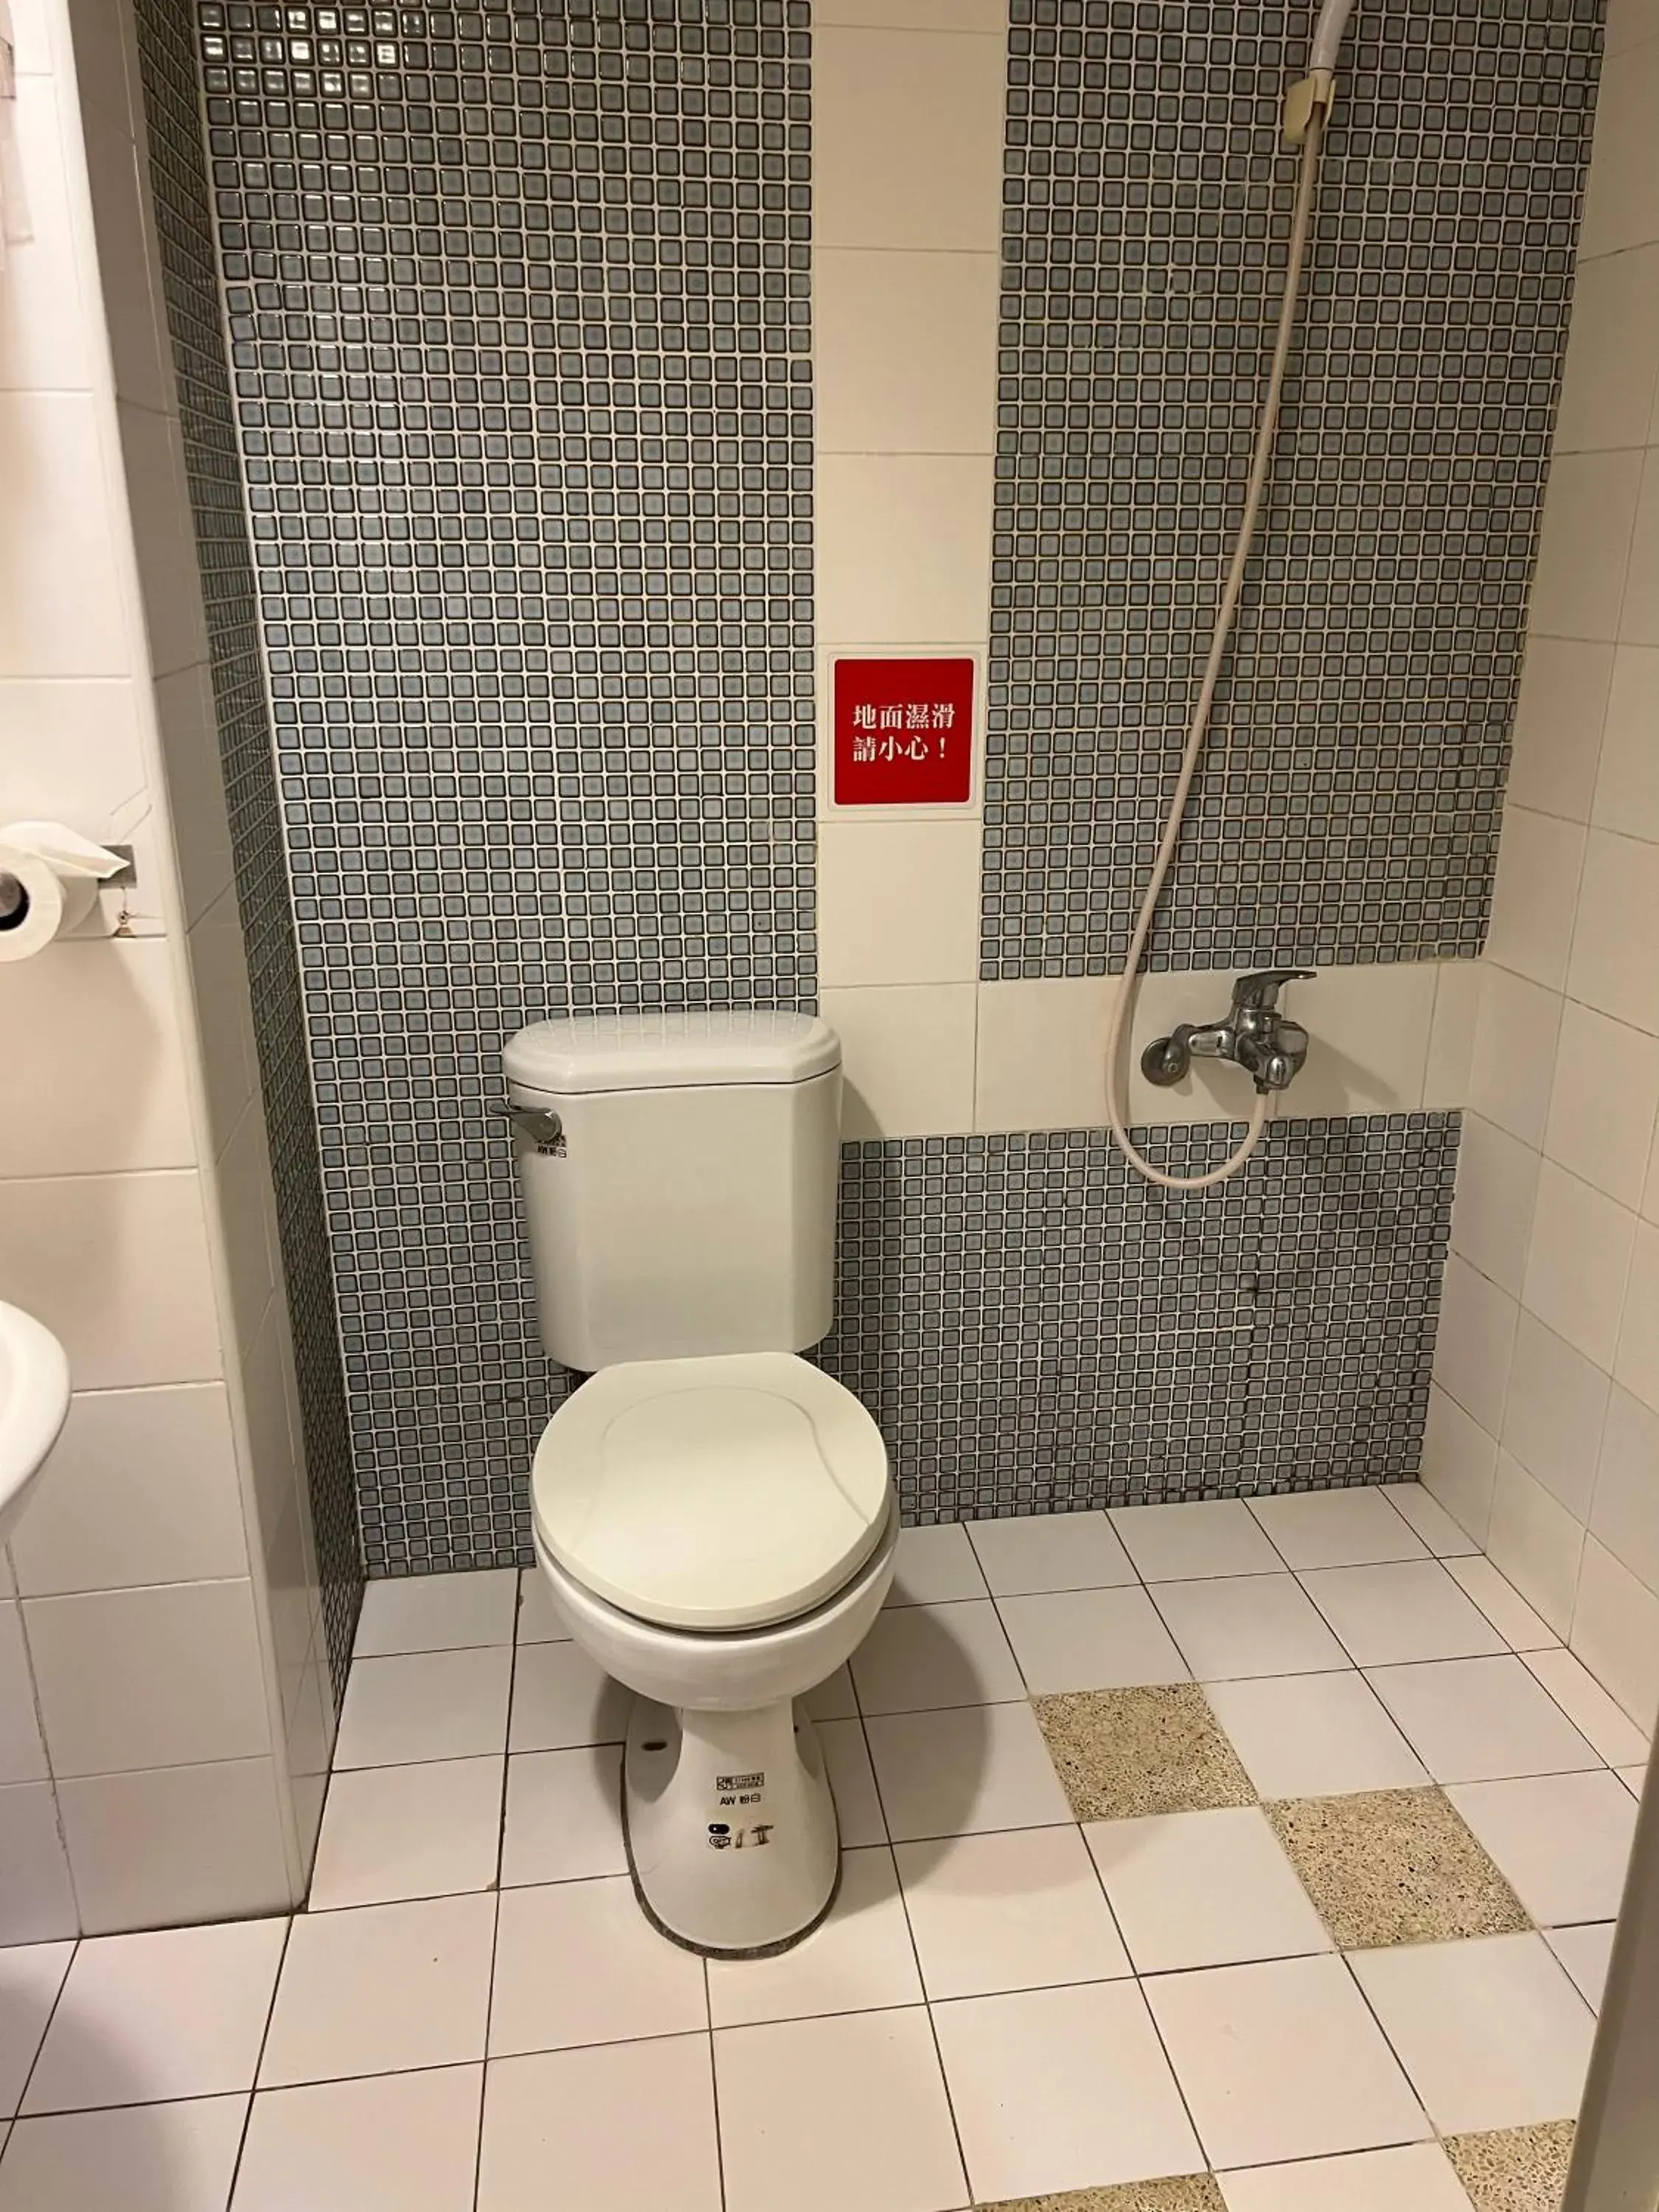 Bathroom in Hwa Hong Hotel